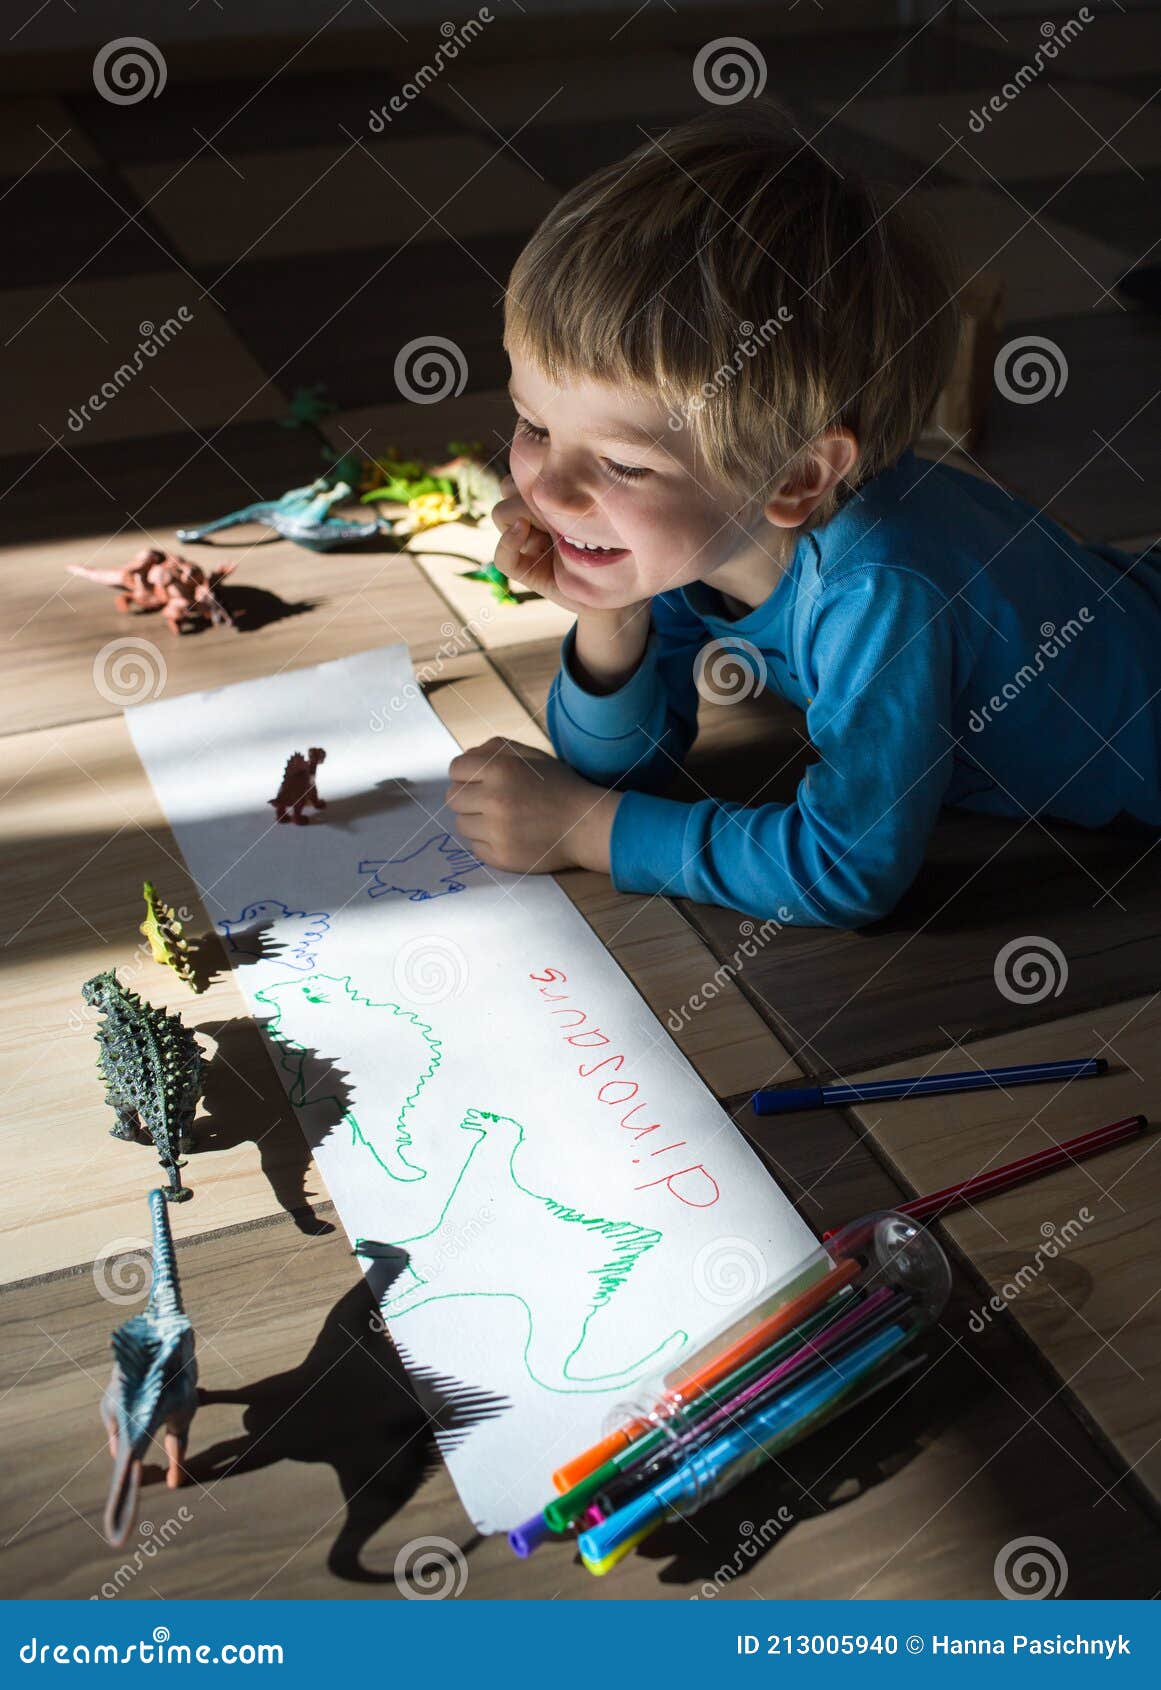 Desenhando Dinossauros - Uma aula de Criatividade